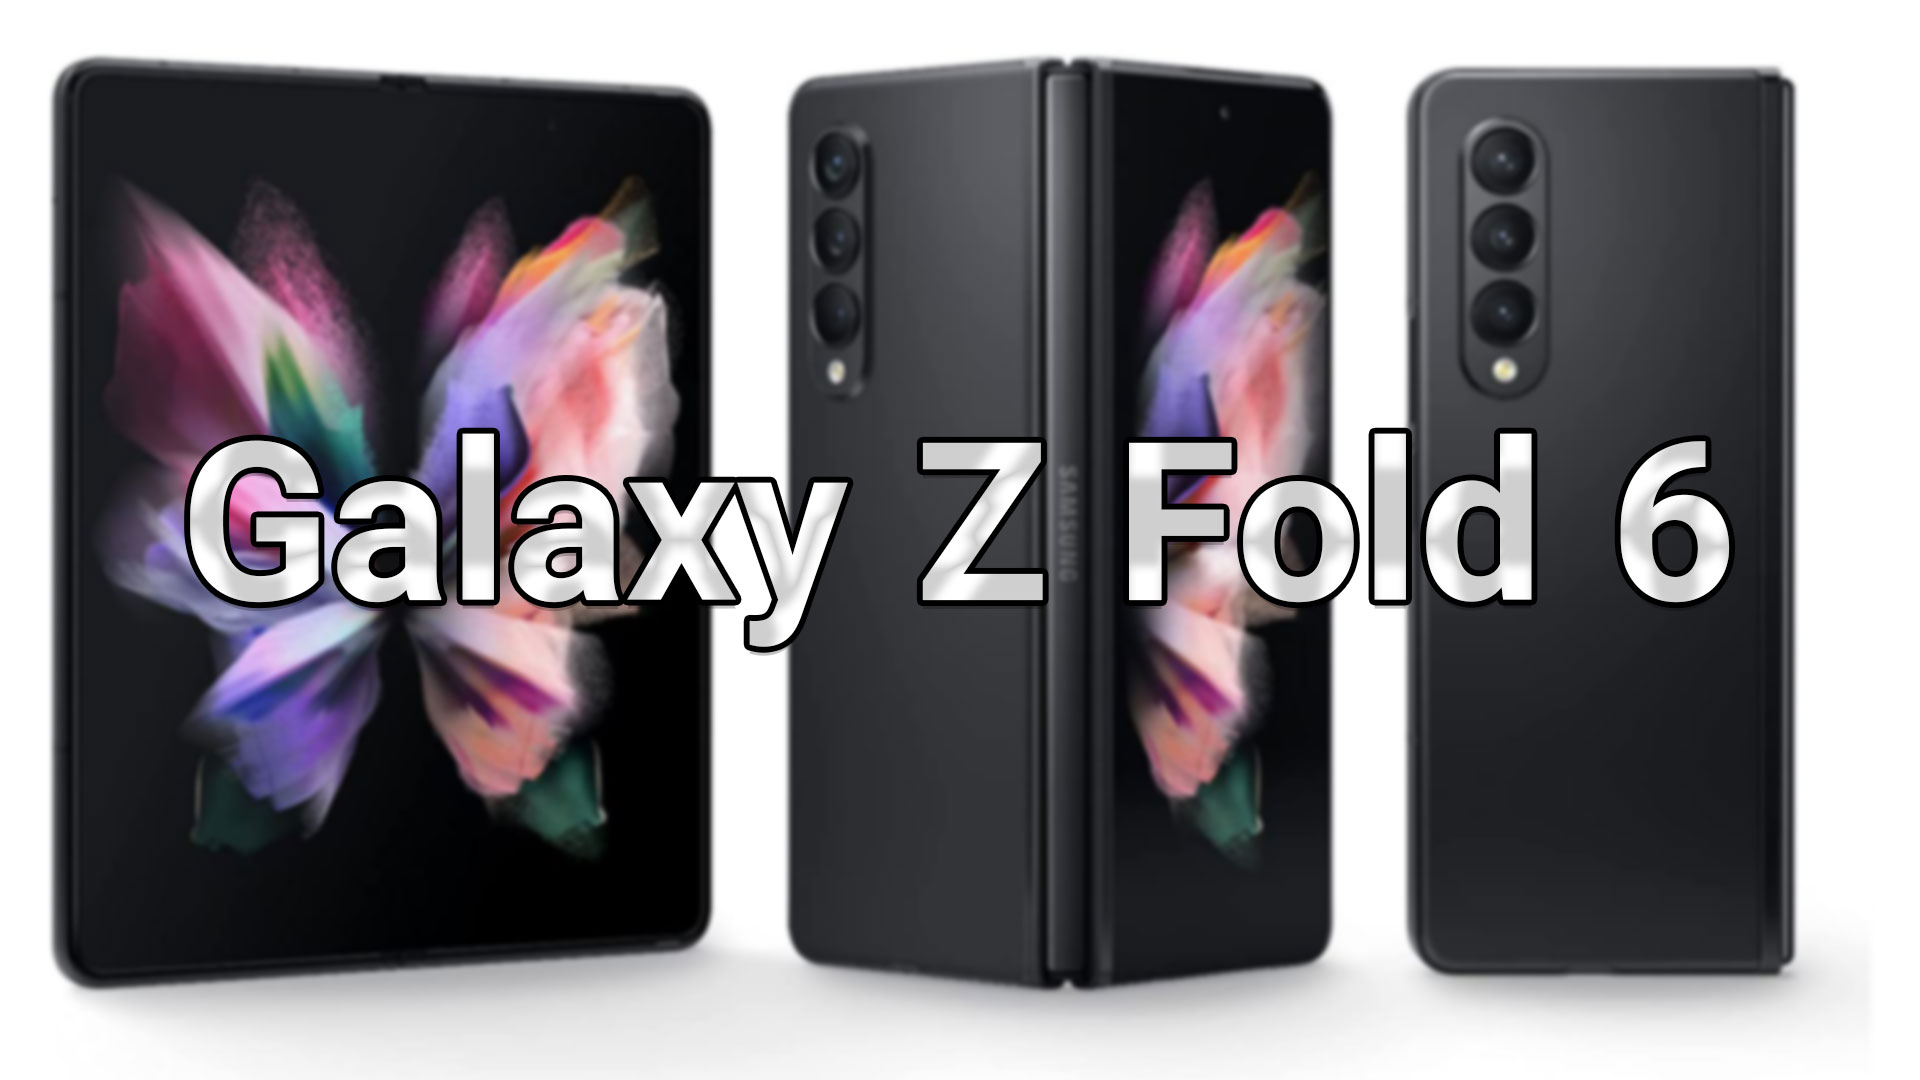  Galaxy Z Fold 6 display